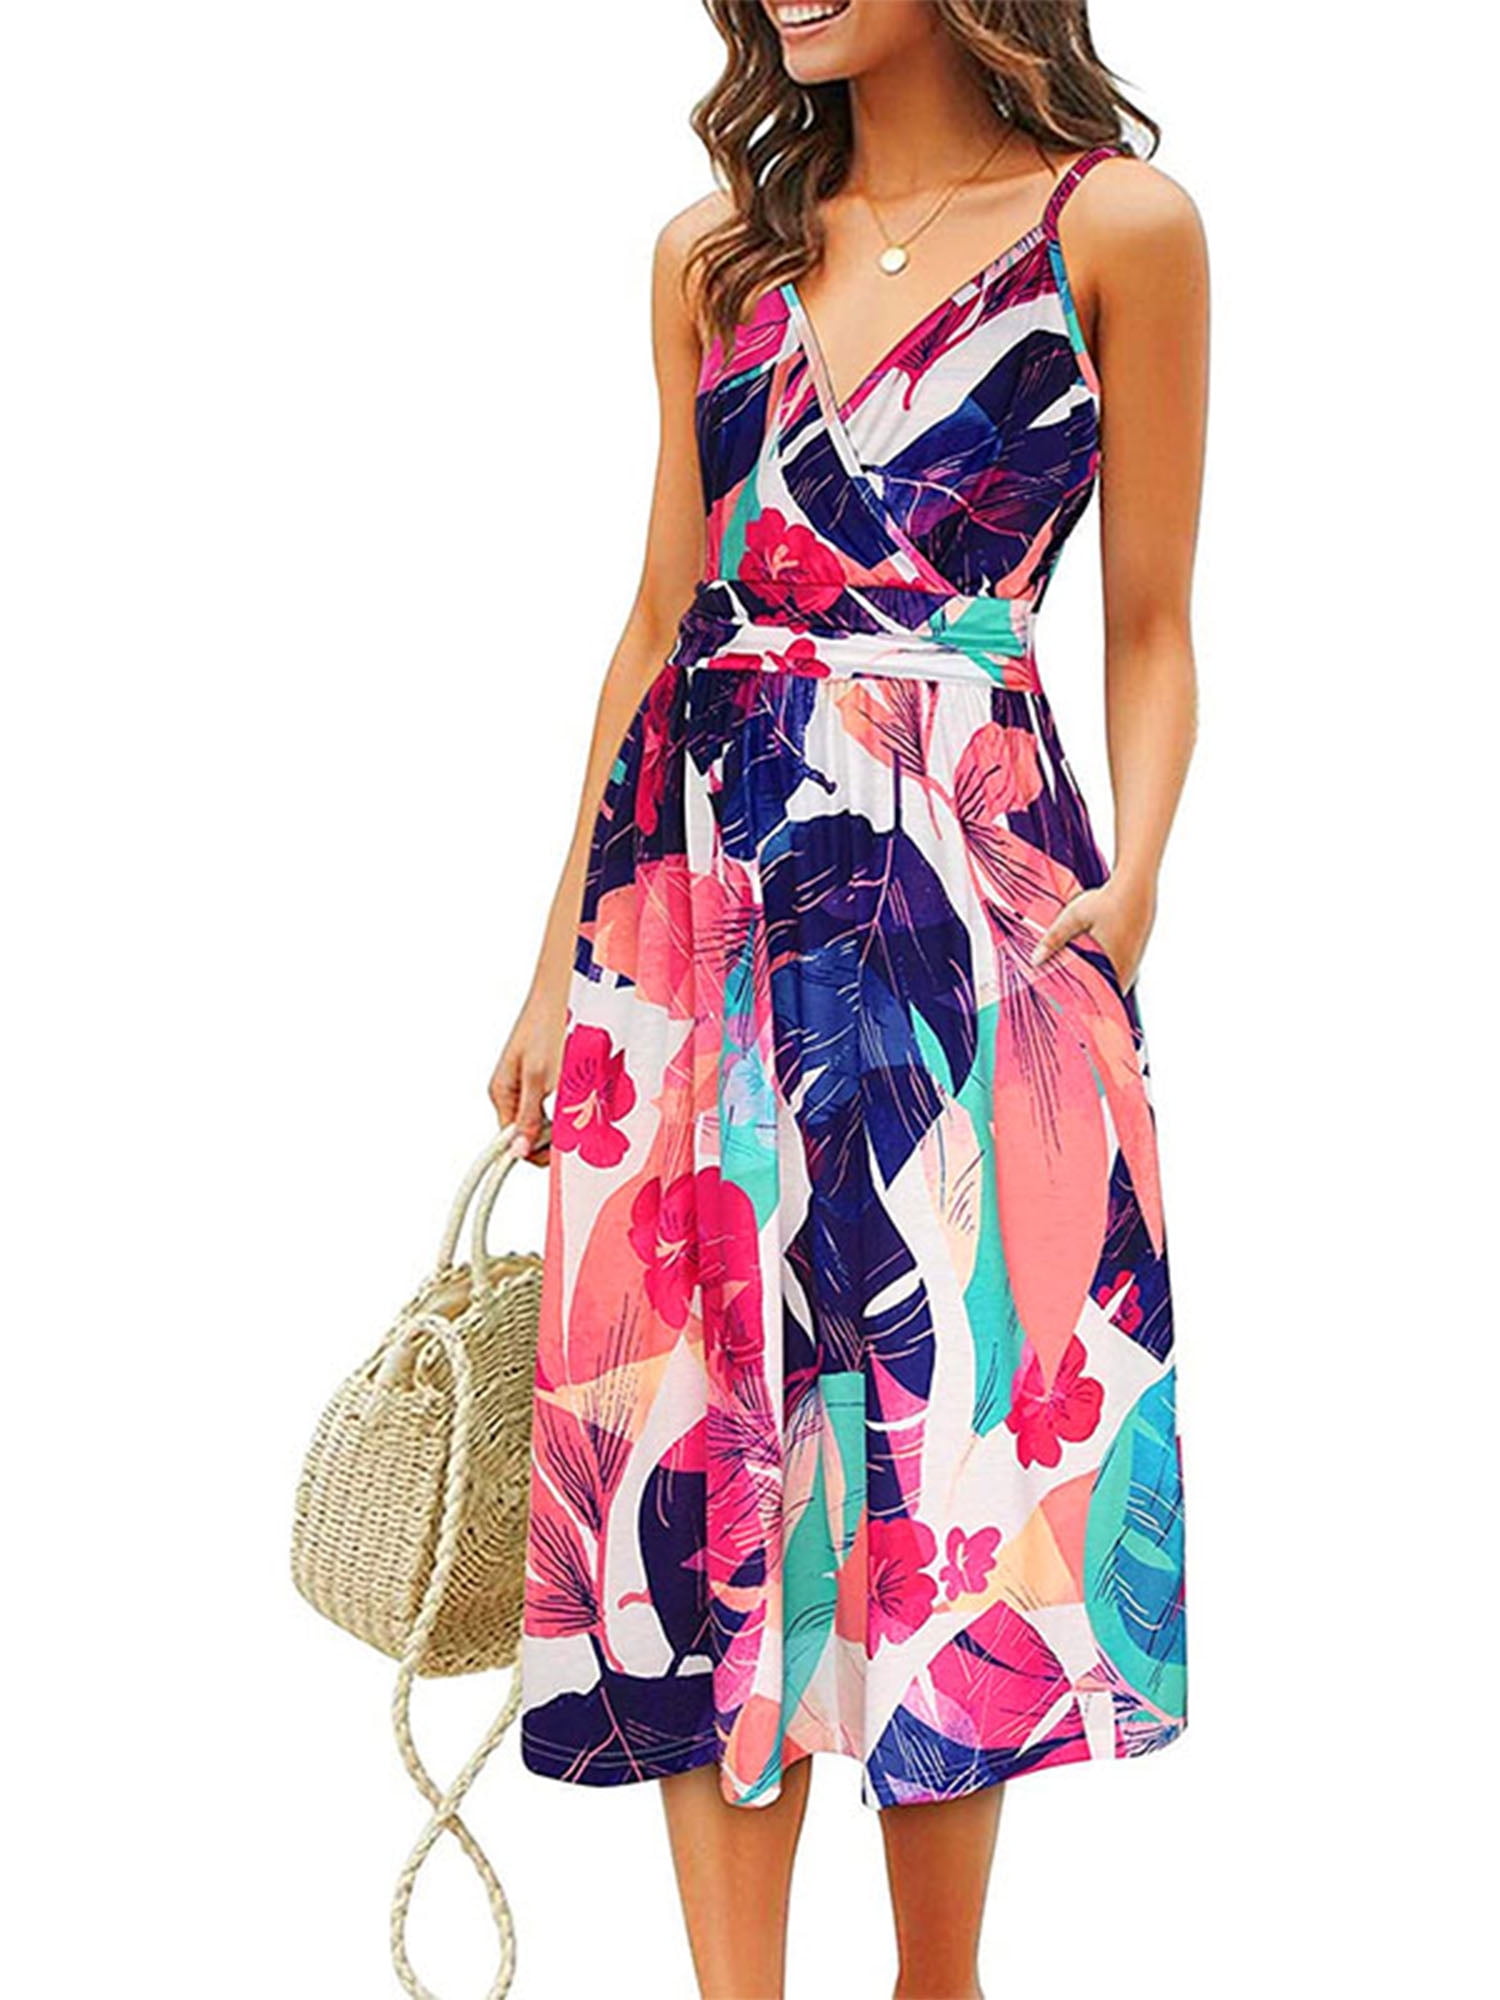 UKAP - Women Sleeveless Floral Dress ...